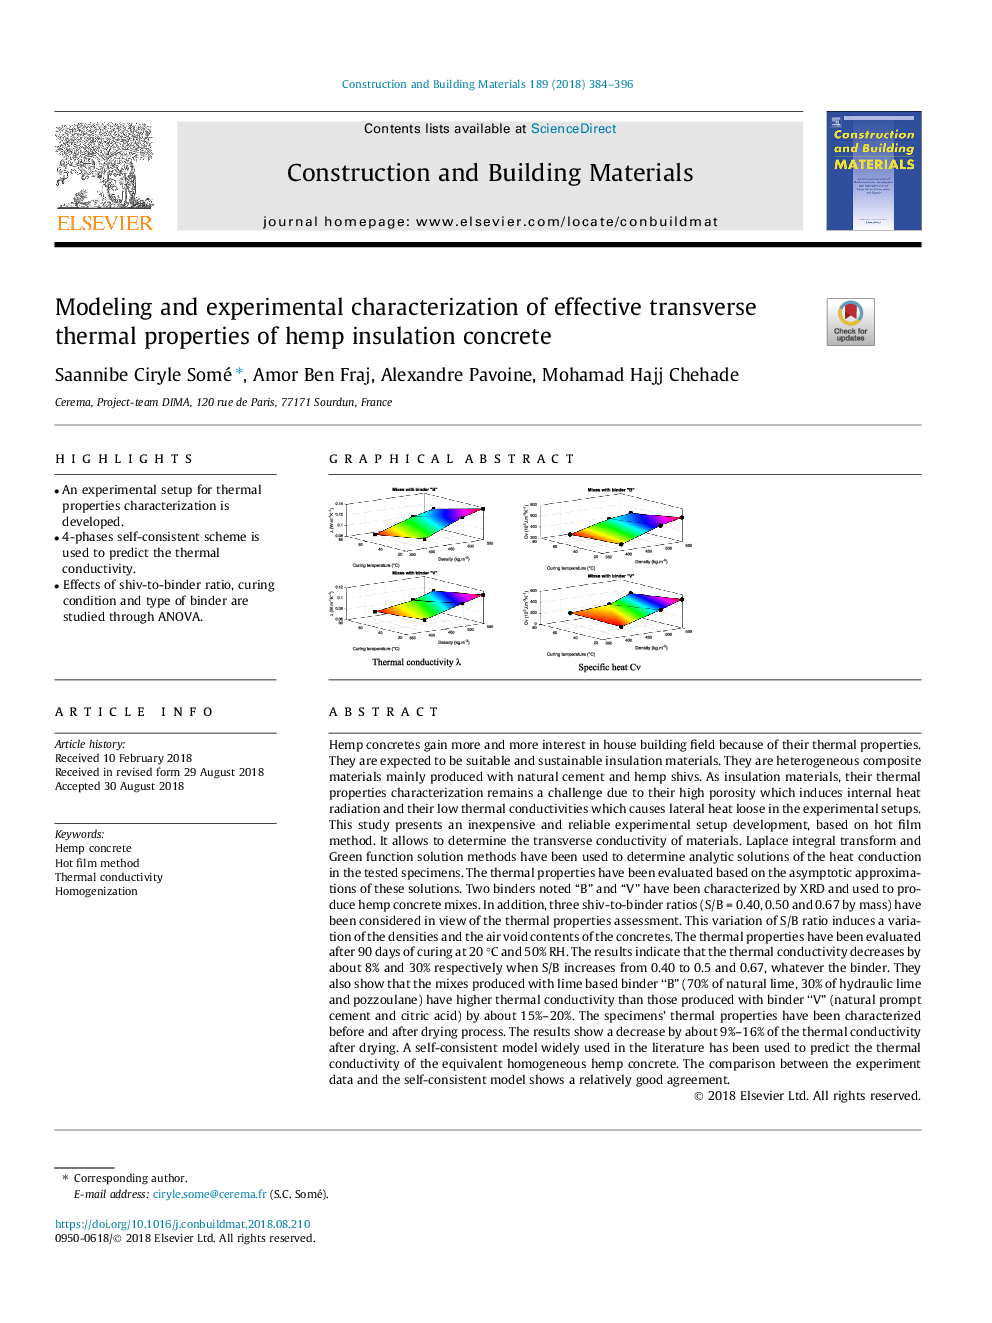 مدلسازی و آزمایشگاهی ویژگیهای حرارتی مؤثر بر بتن الیاف کپسول